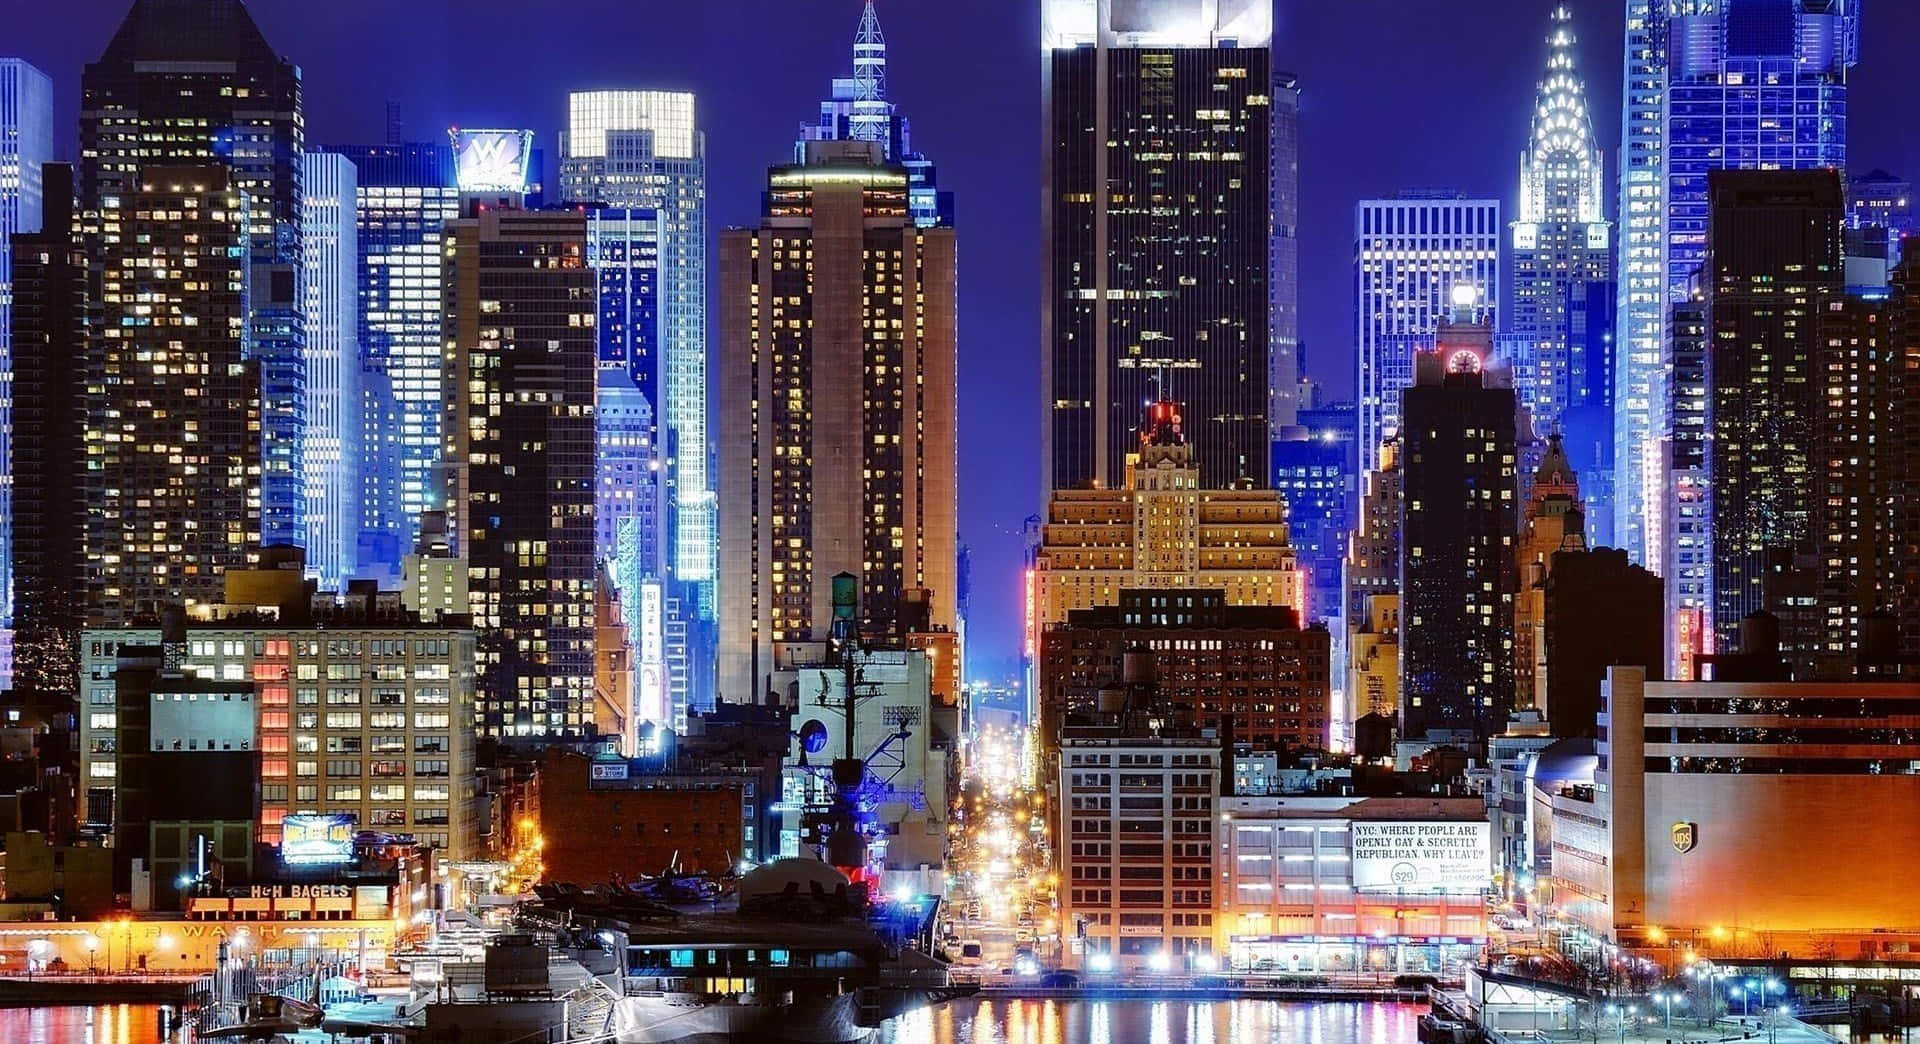 Bybygningeri New York Oplyses Om Natten I Byen.